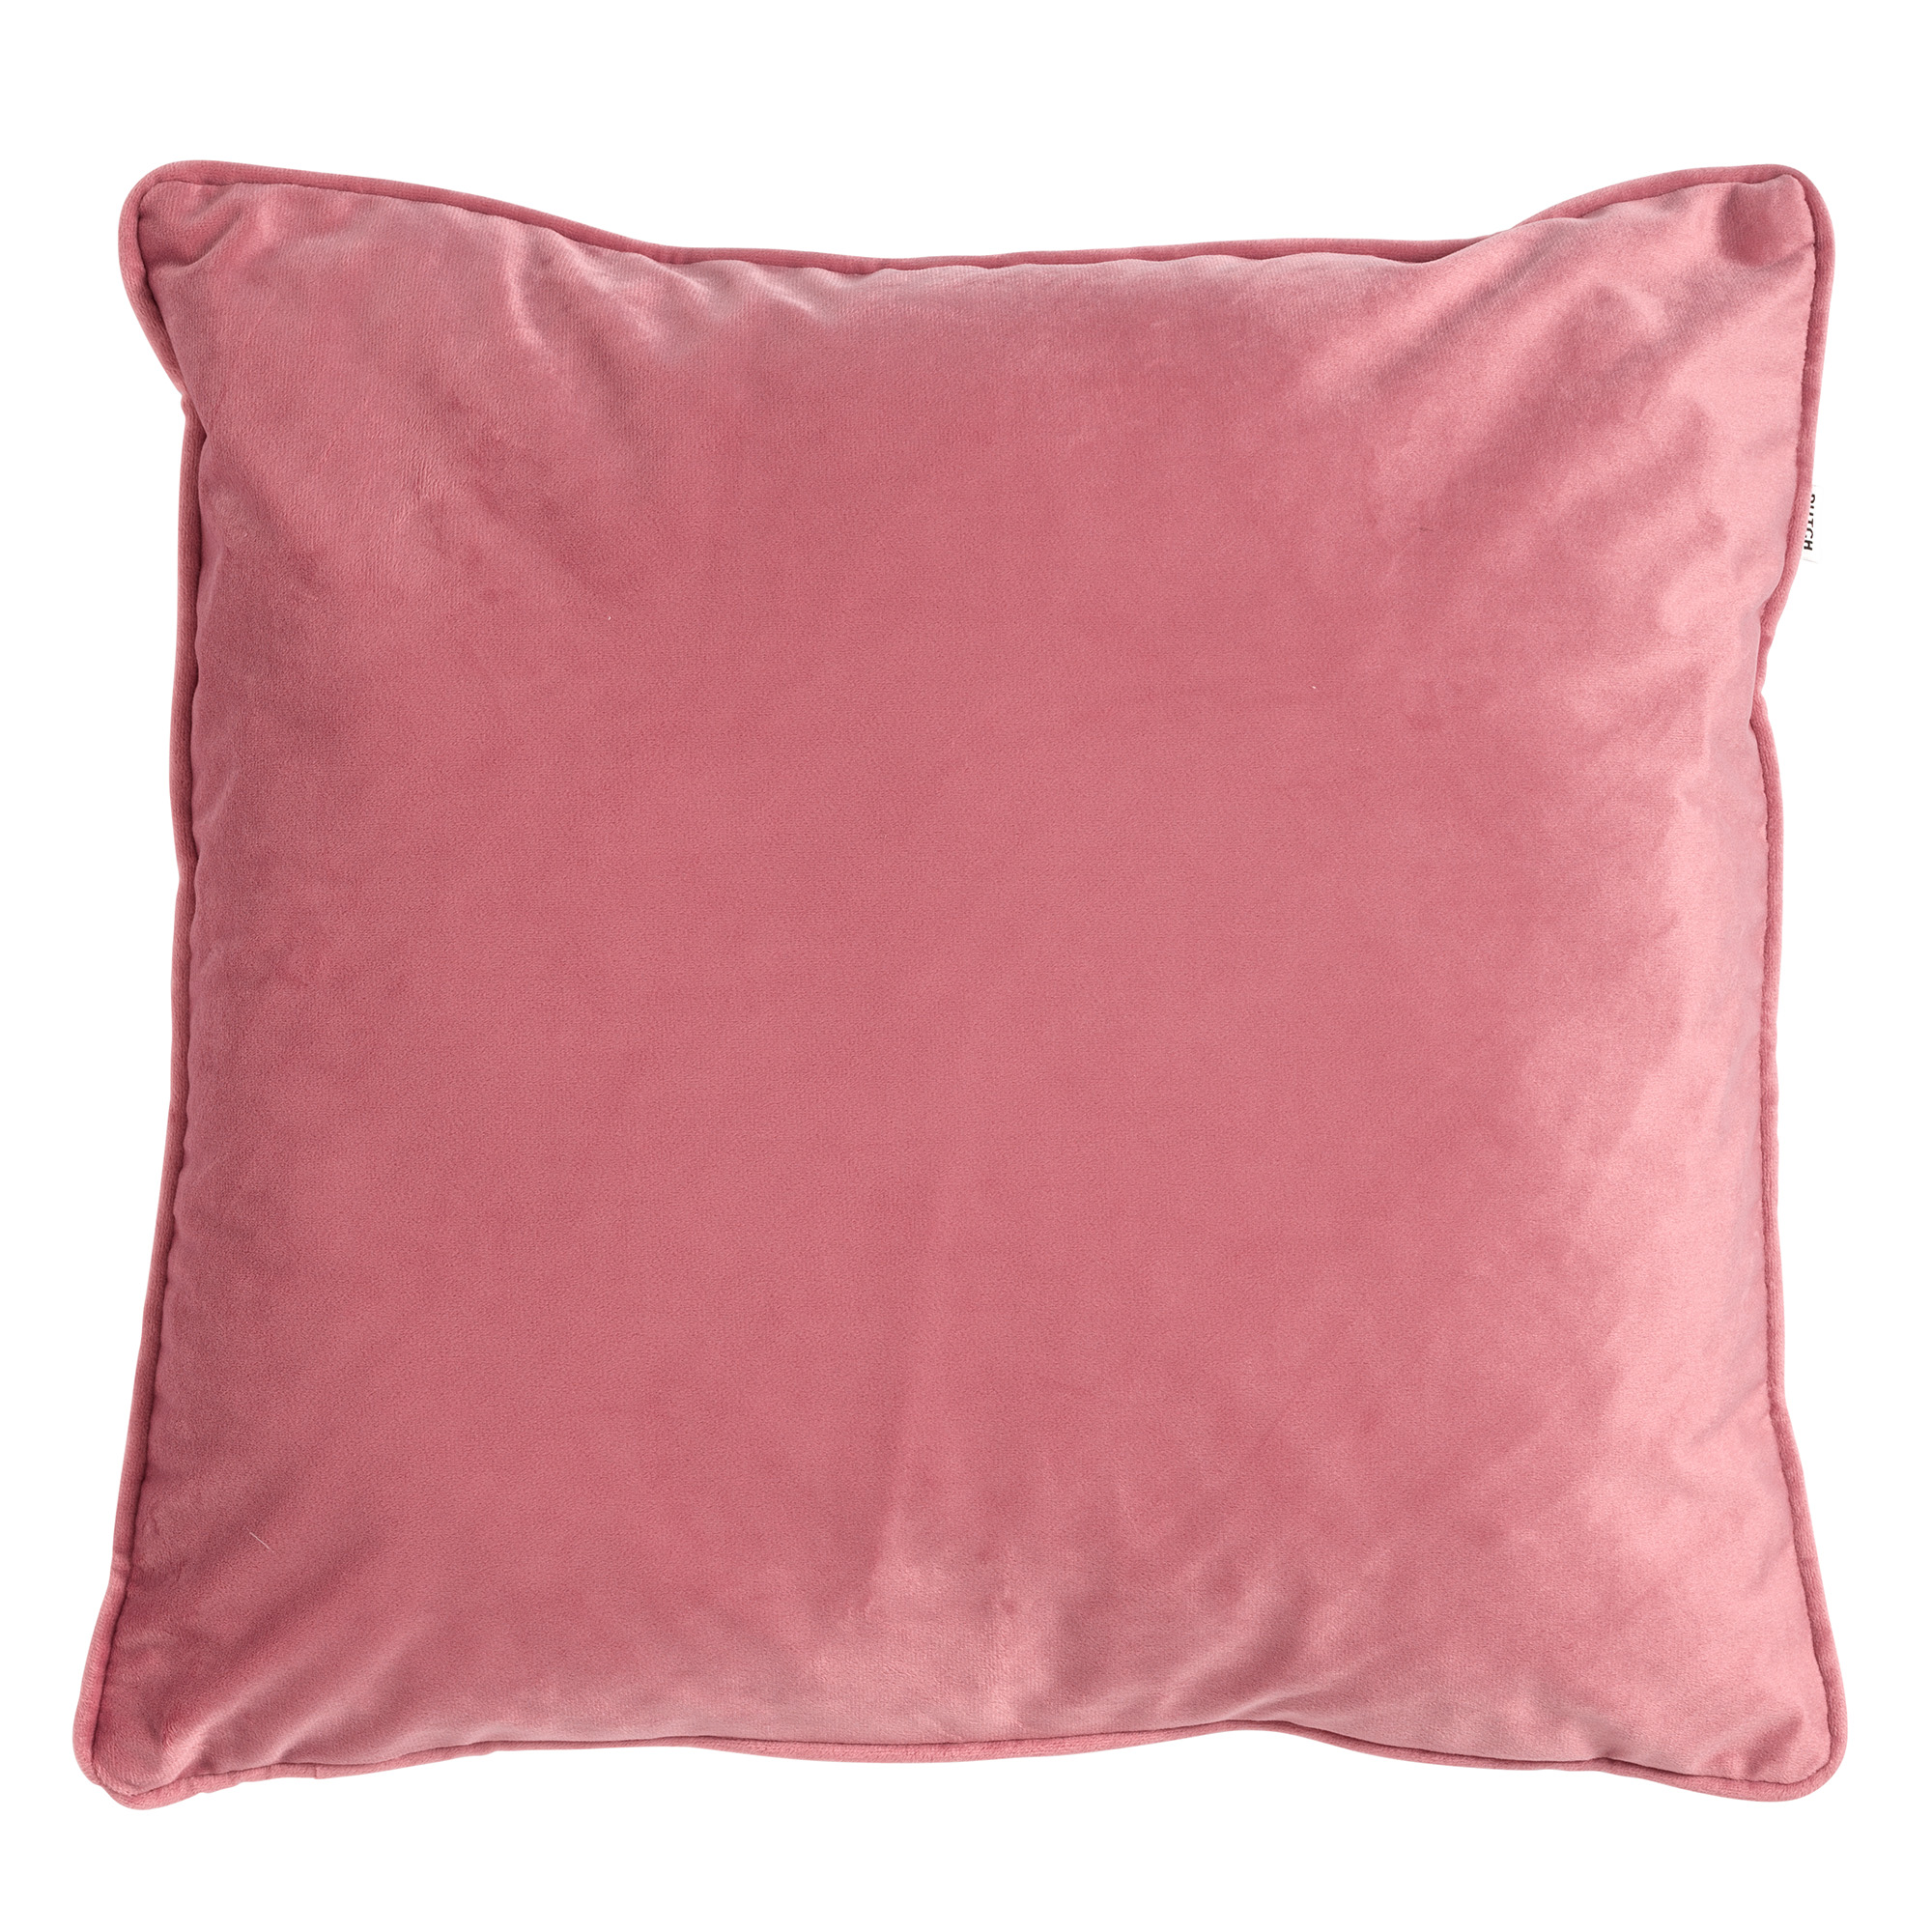 FINN - Sierkussen 60x60 cm - velvet - effen kleur - Dusty Rose - roze